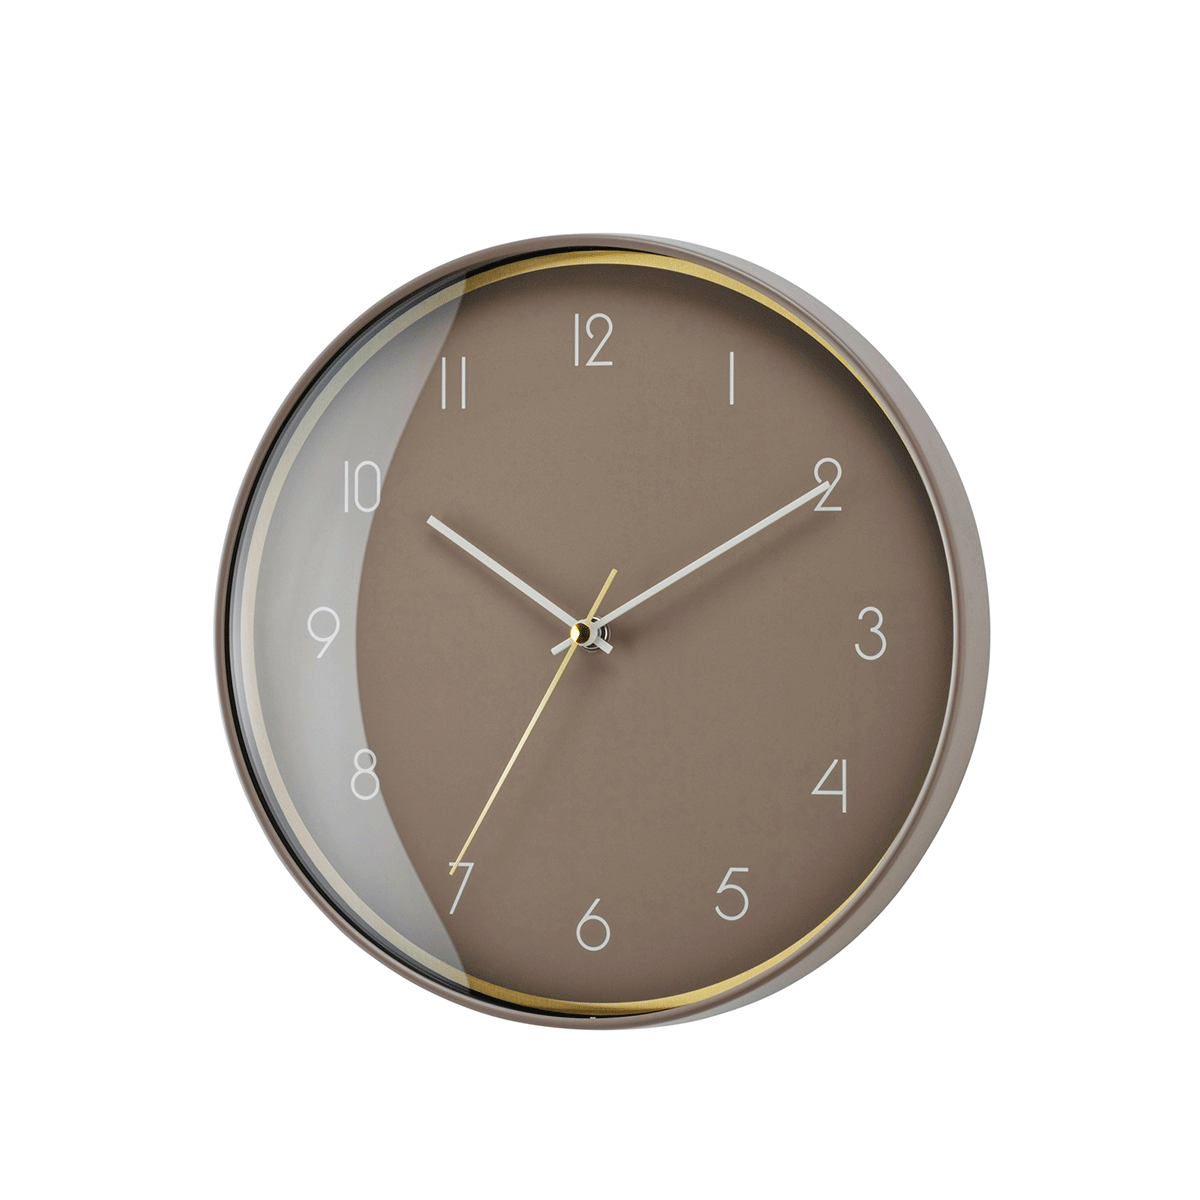 Nuancecolor Simple Clock